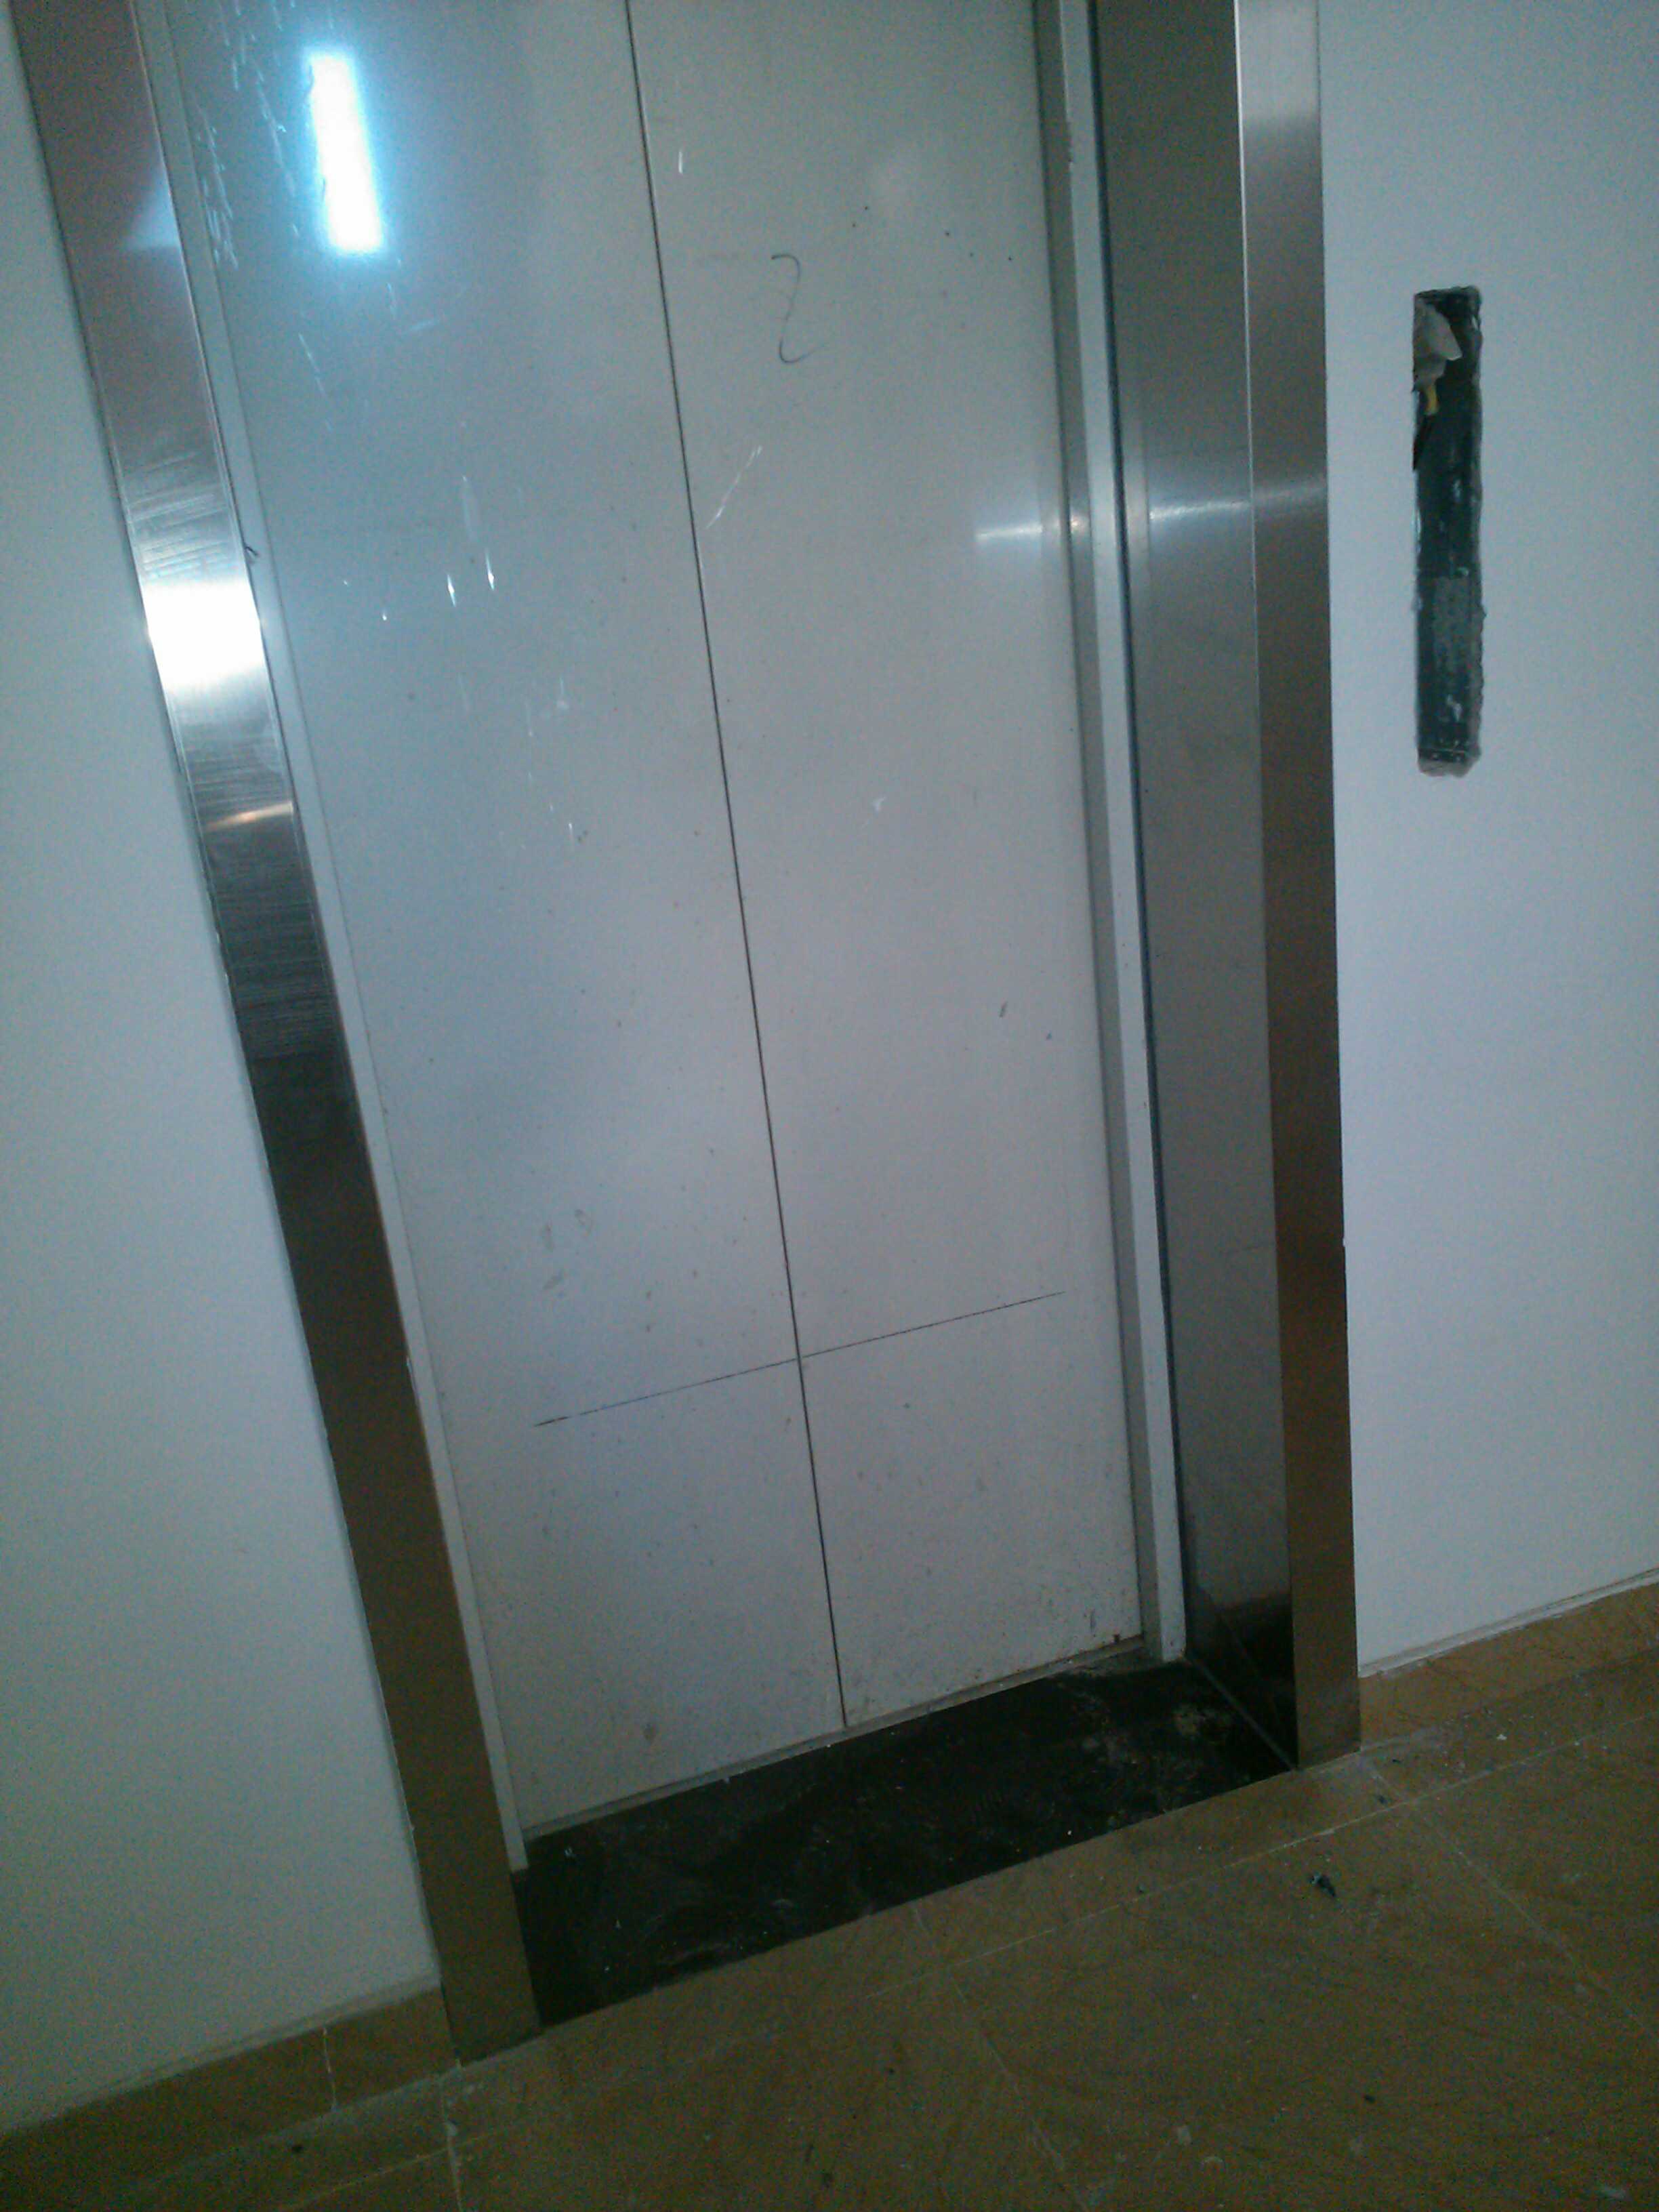 a-5办公楼电梯间走廊玻璃门…3d模型下载-【集简空间】「每日更新」